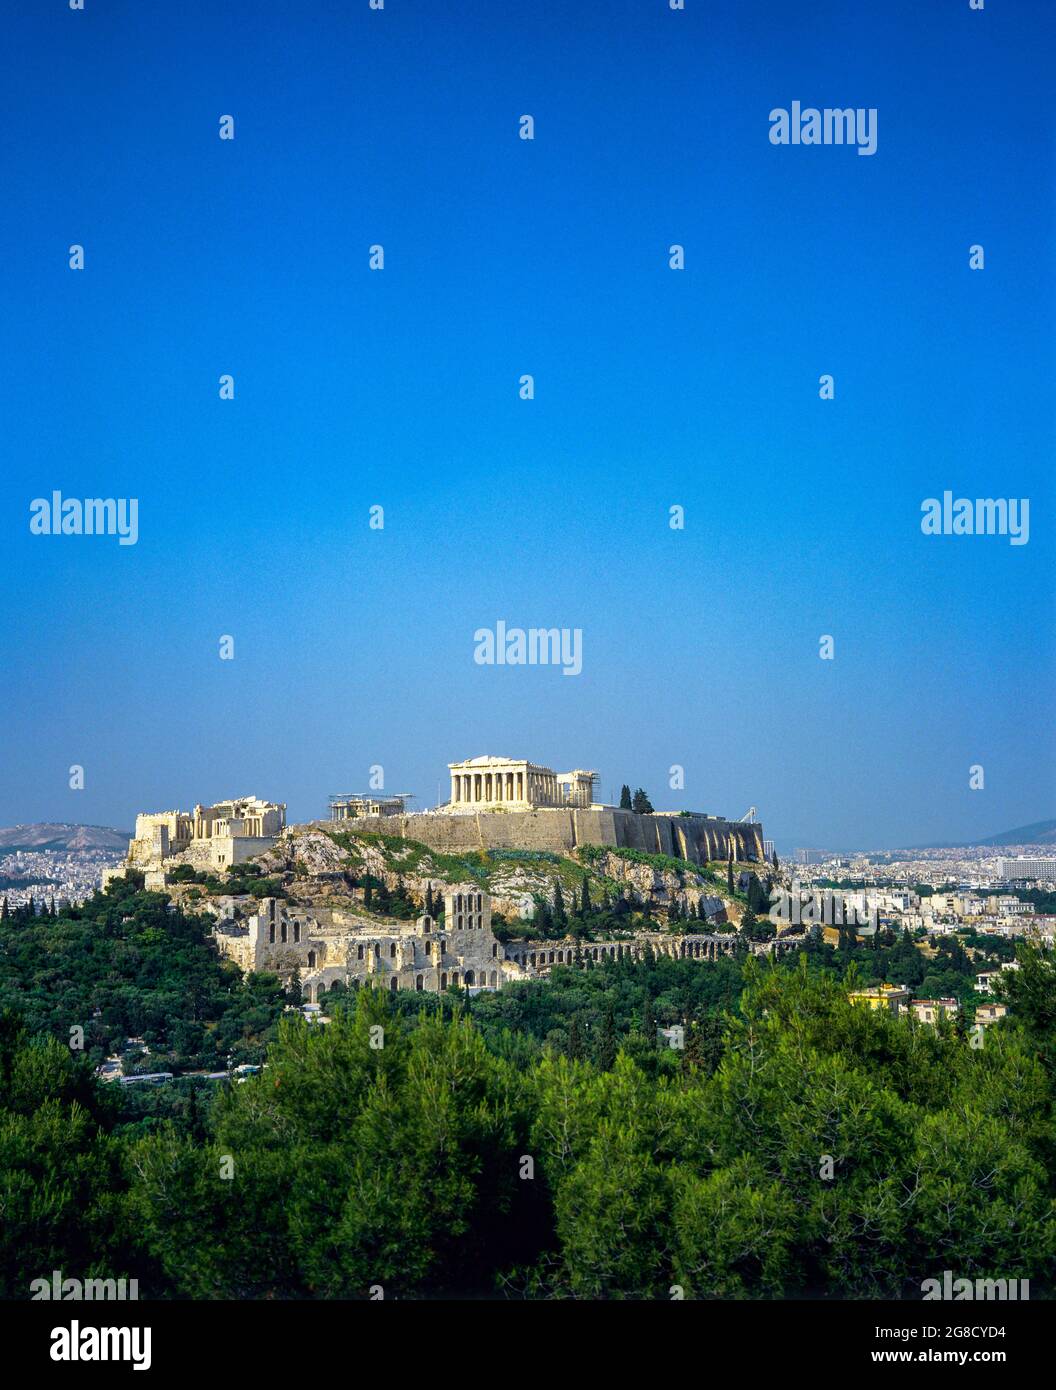 Athens, Parthenon temple atop the Acropolis hill, Greece, Europe, Stock Photo